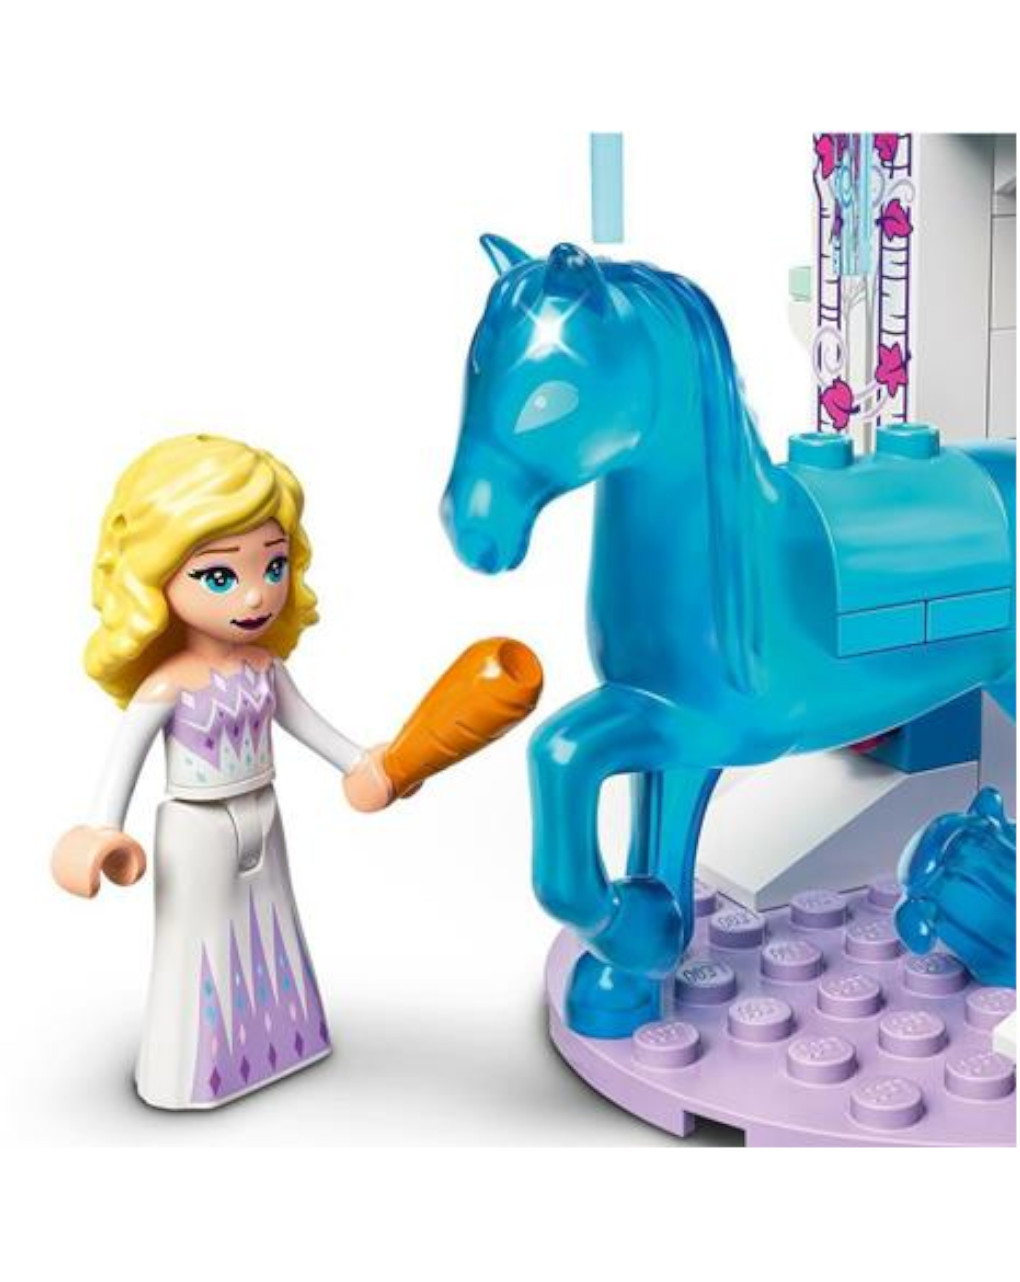 Lego disney princess - elsa e la stalla di ghiaccio di nokk - 43209 - LEGO